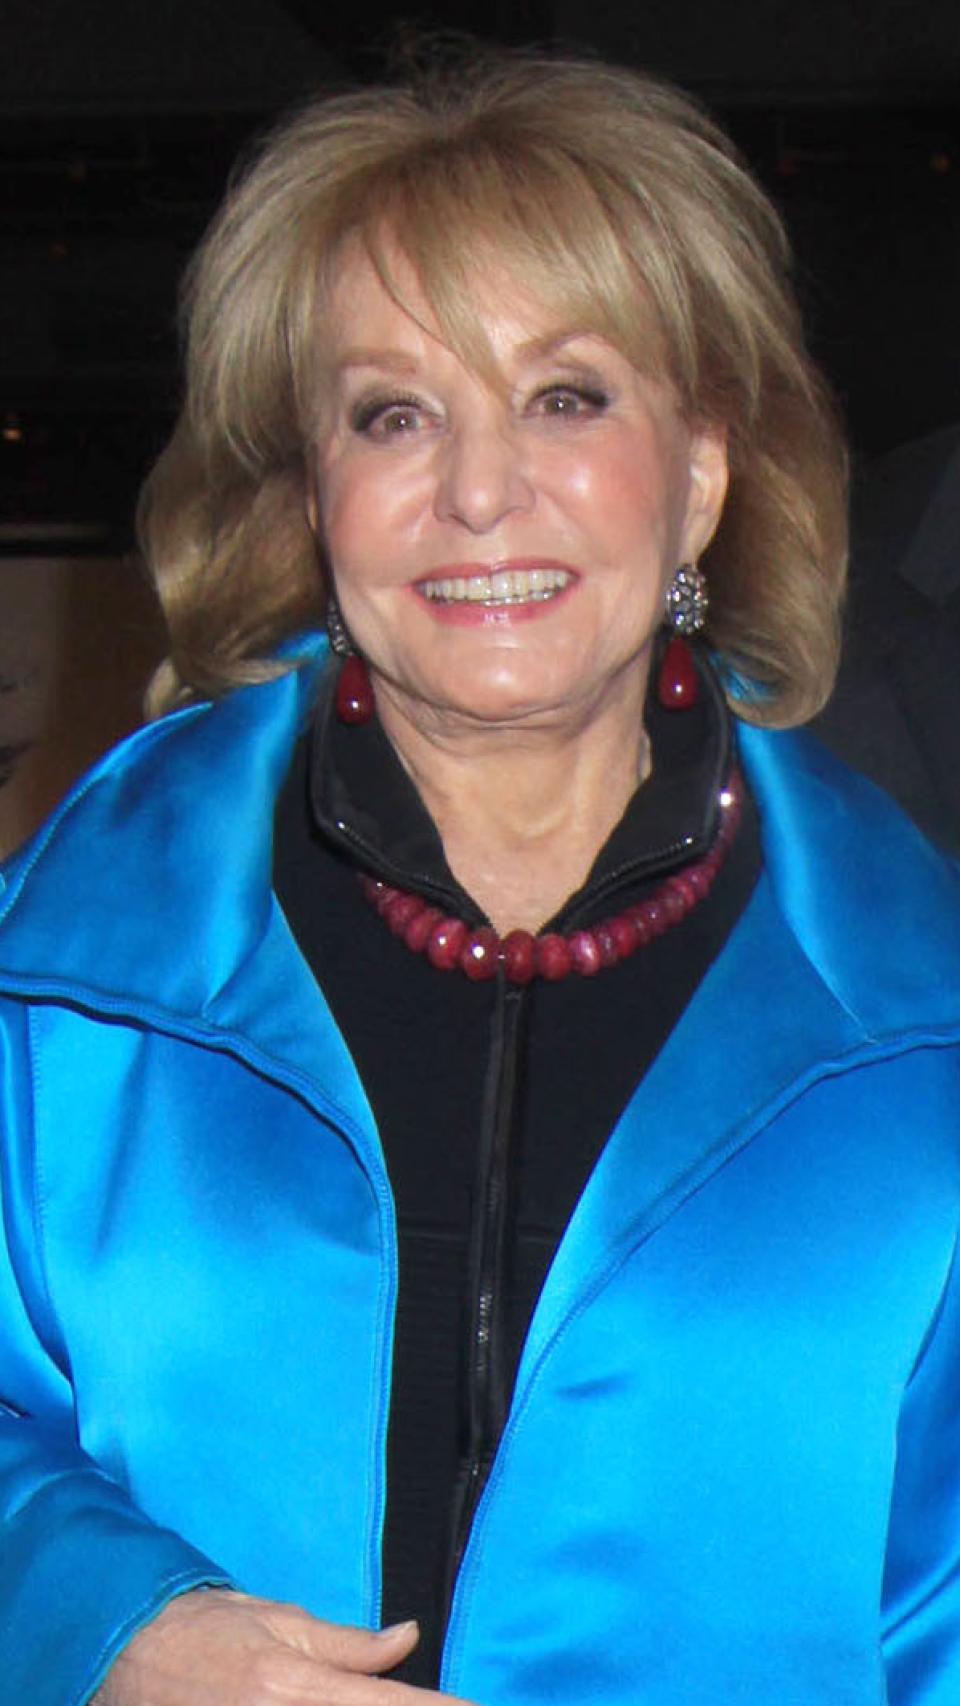 La periodista estadounidense en un evento público, en marzo de 2014 en Nueva York.